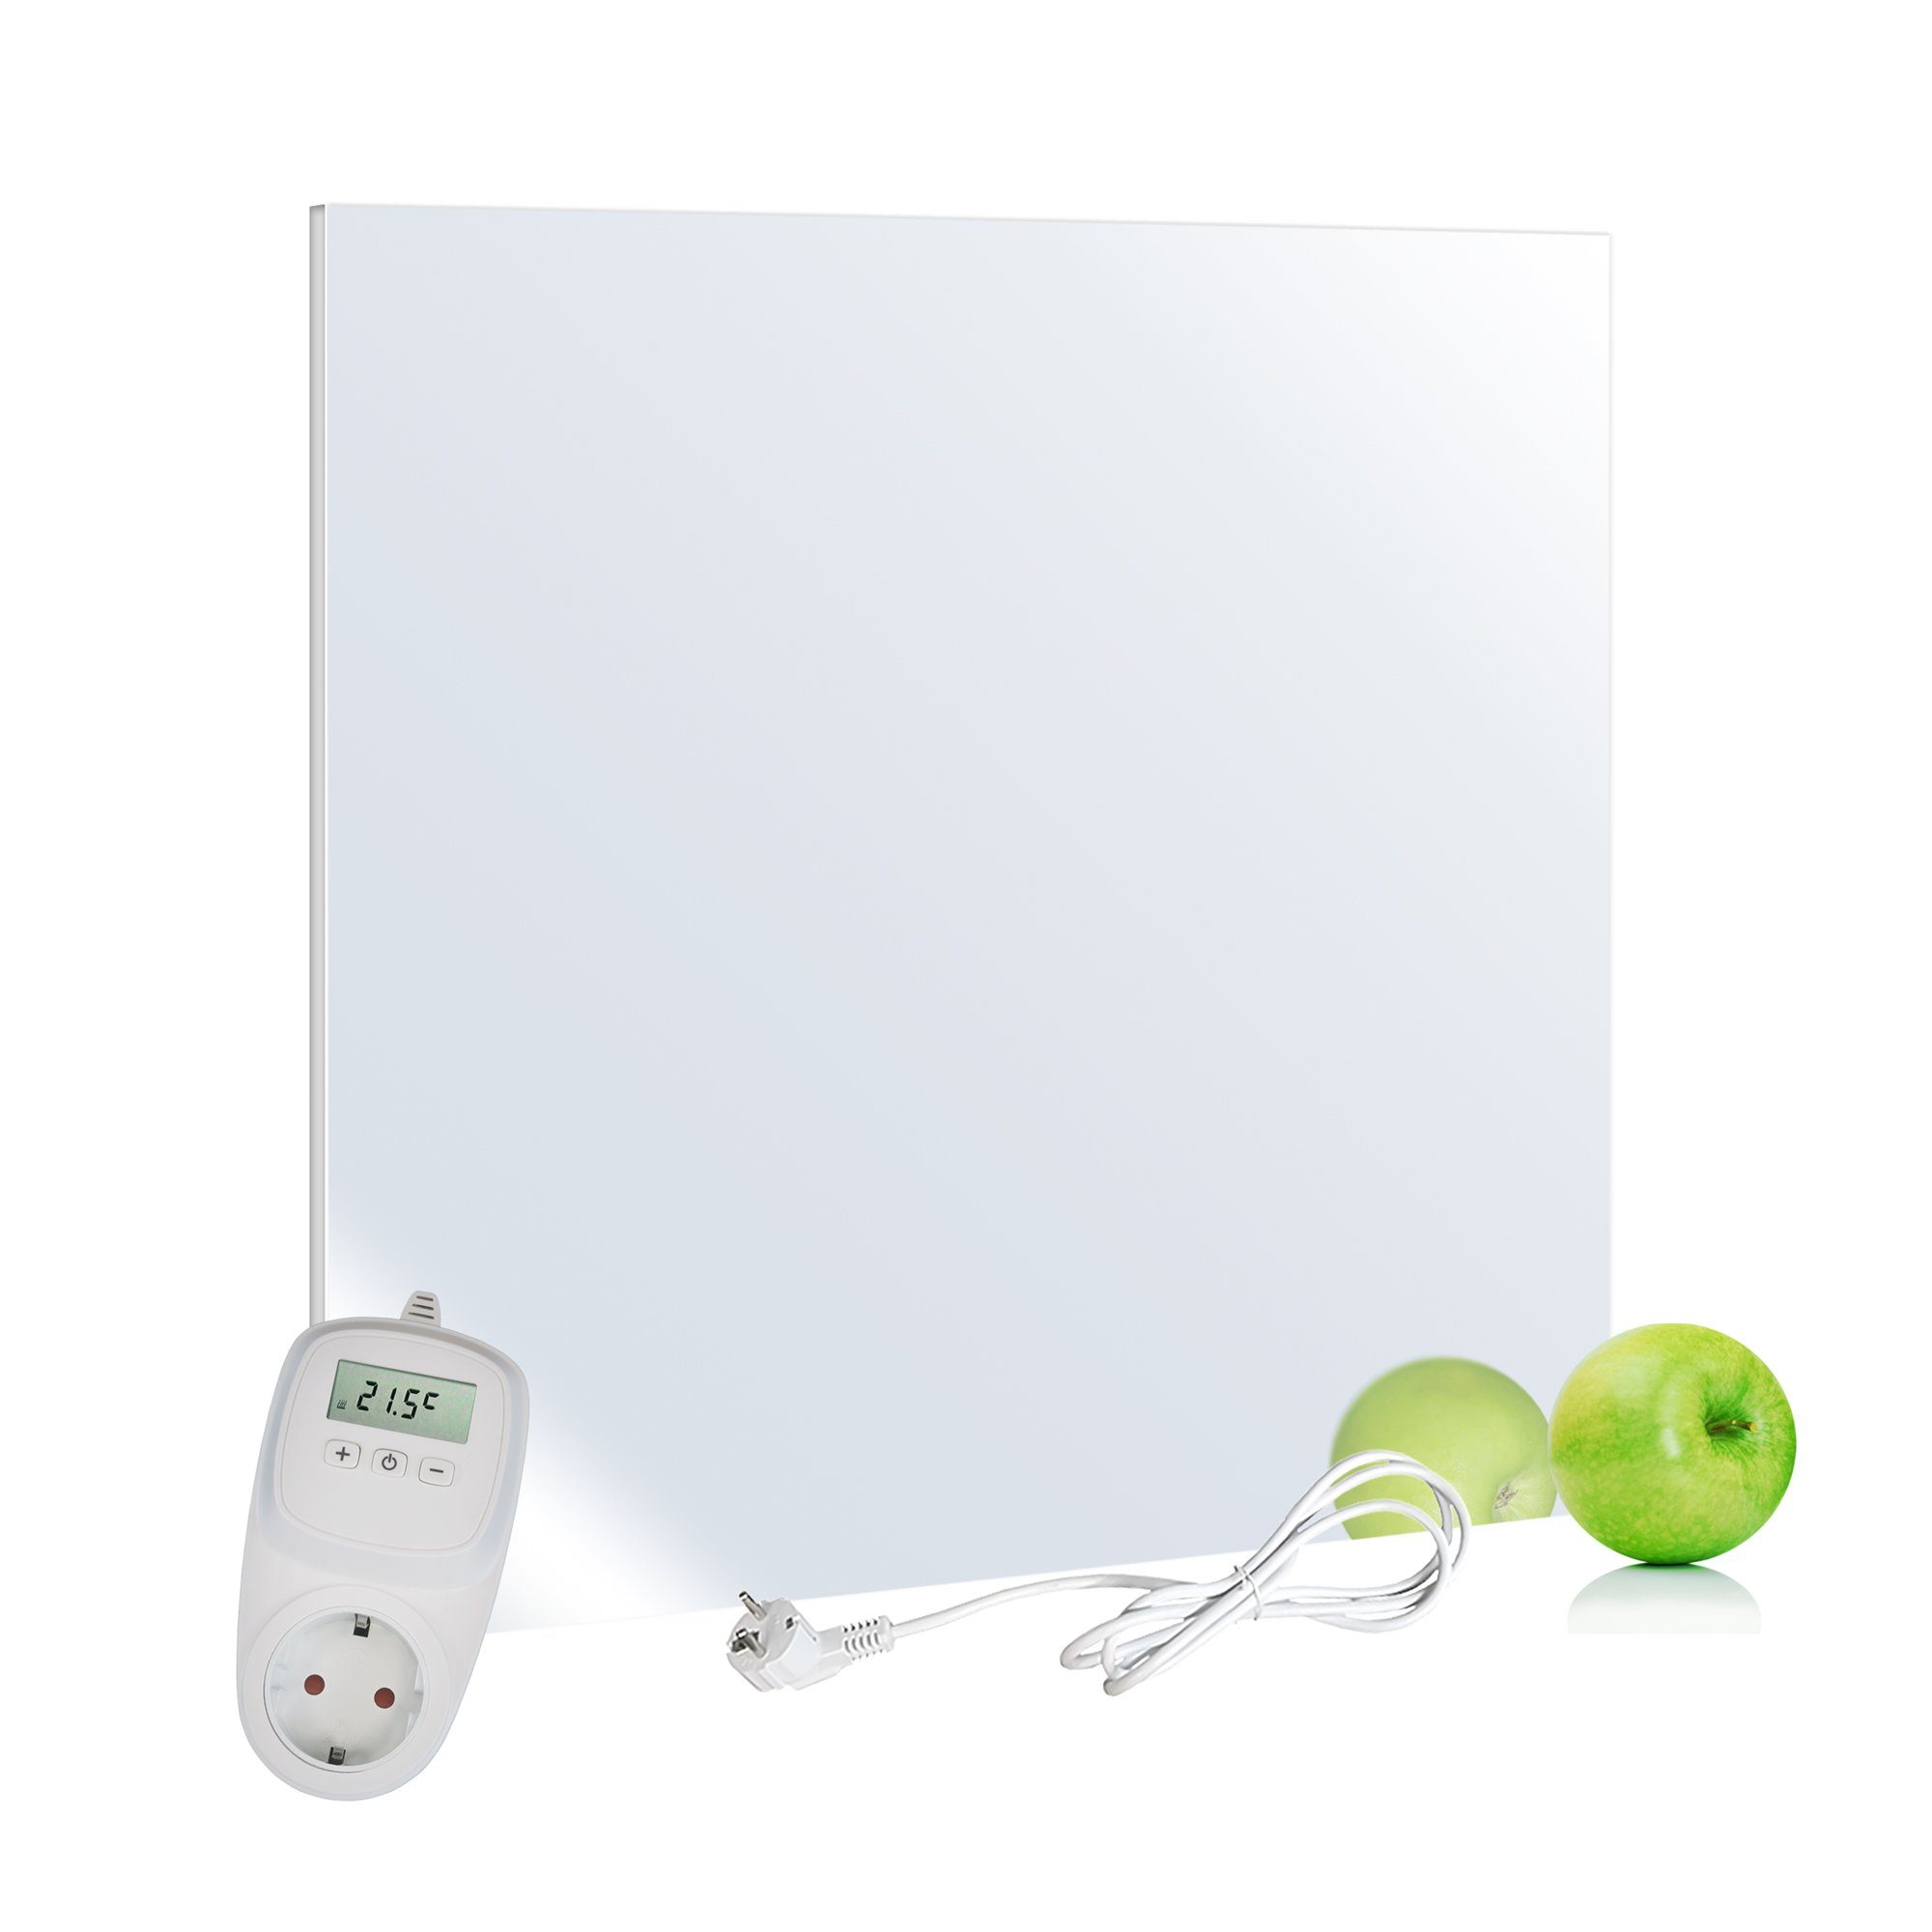 Infrarotheizung VIESTA Ein-Ausschalter H320-SP VIESTA Thermostat Watt + VIESTA + TH10 Spiegel mit Spiegel Paneelheizkörper H320-SP TH10, 320